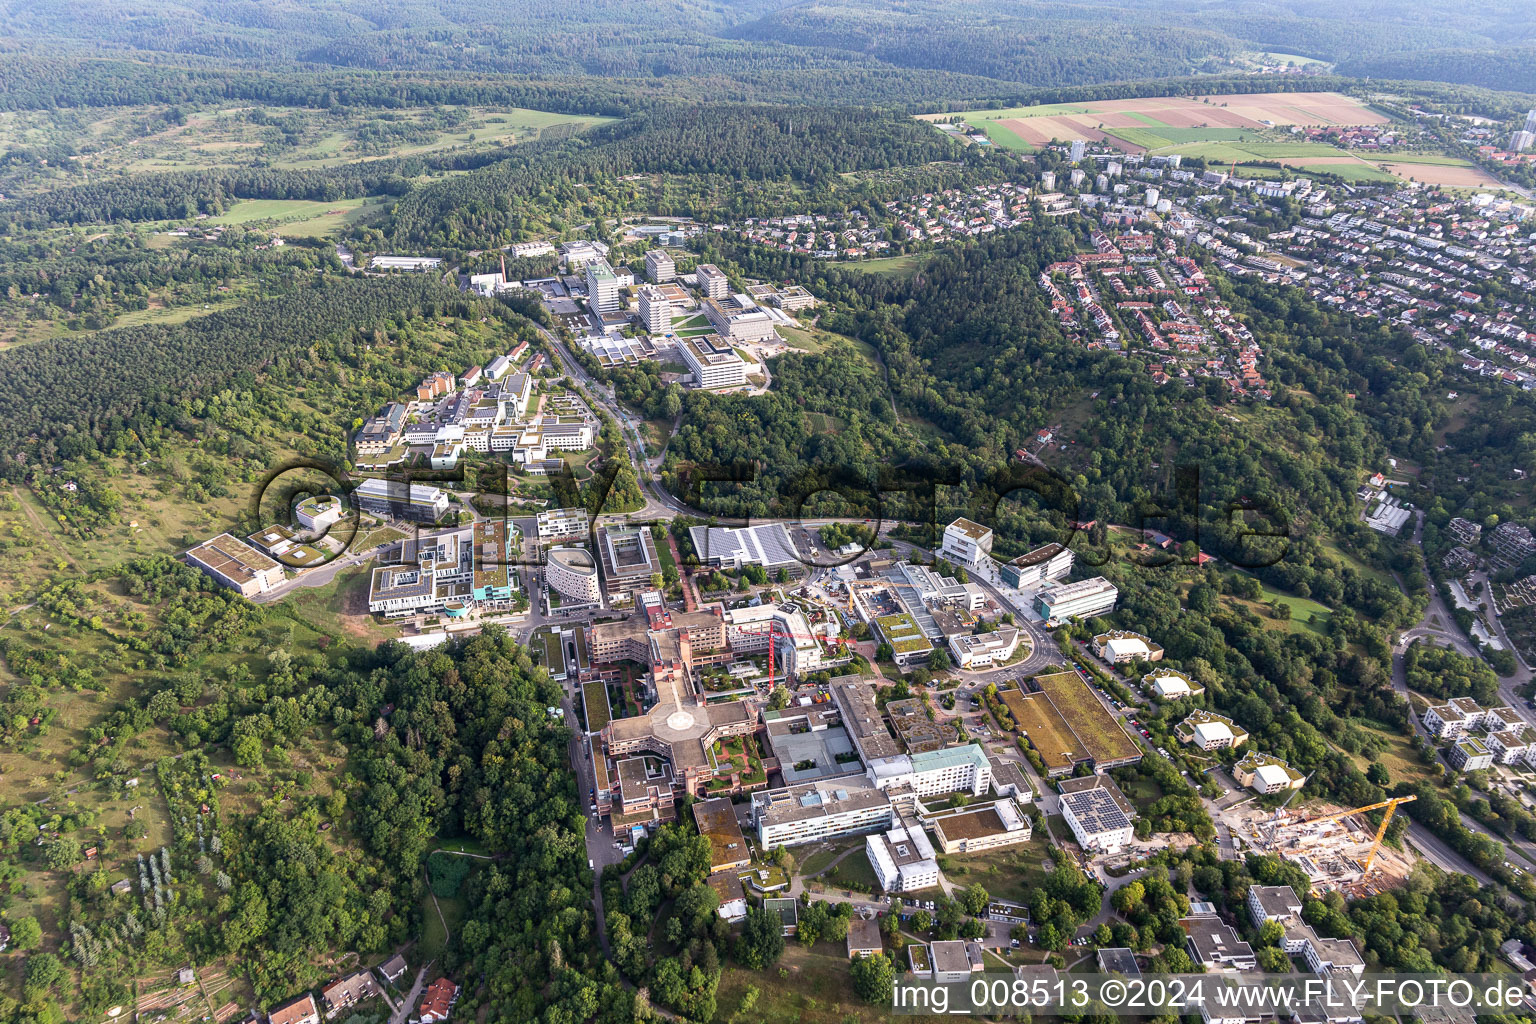 Vue aérienne de Aperçu général des terrains cliniques de l'hôpital universitaire de médecine du Schnarrenberg à Tübingen dans le département Bade-Wurtemberg, Allemagne